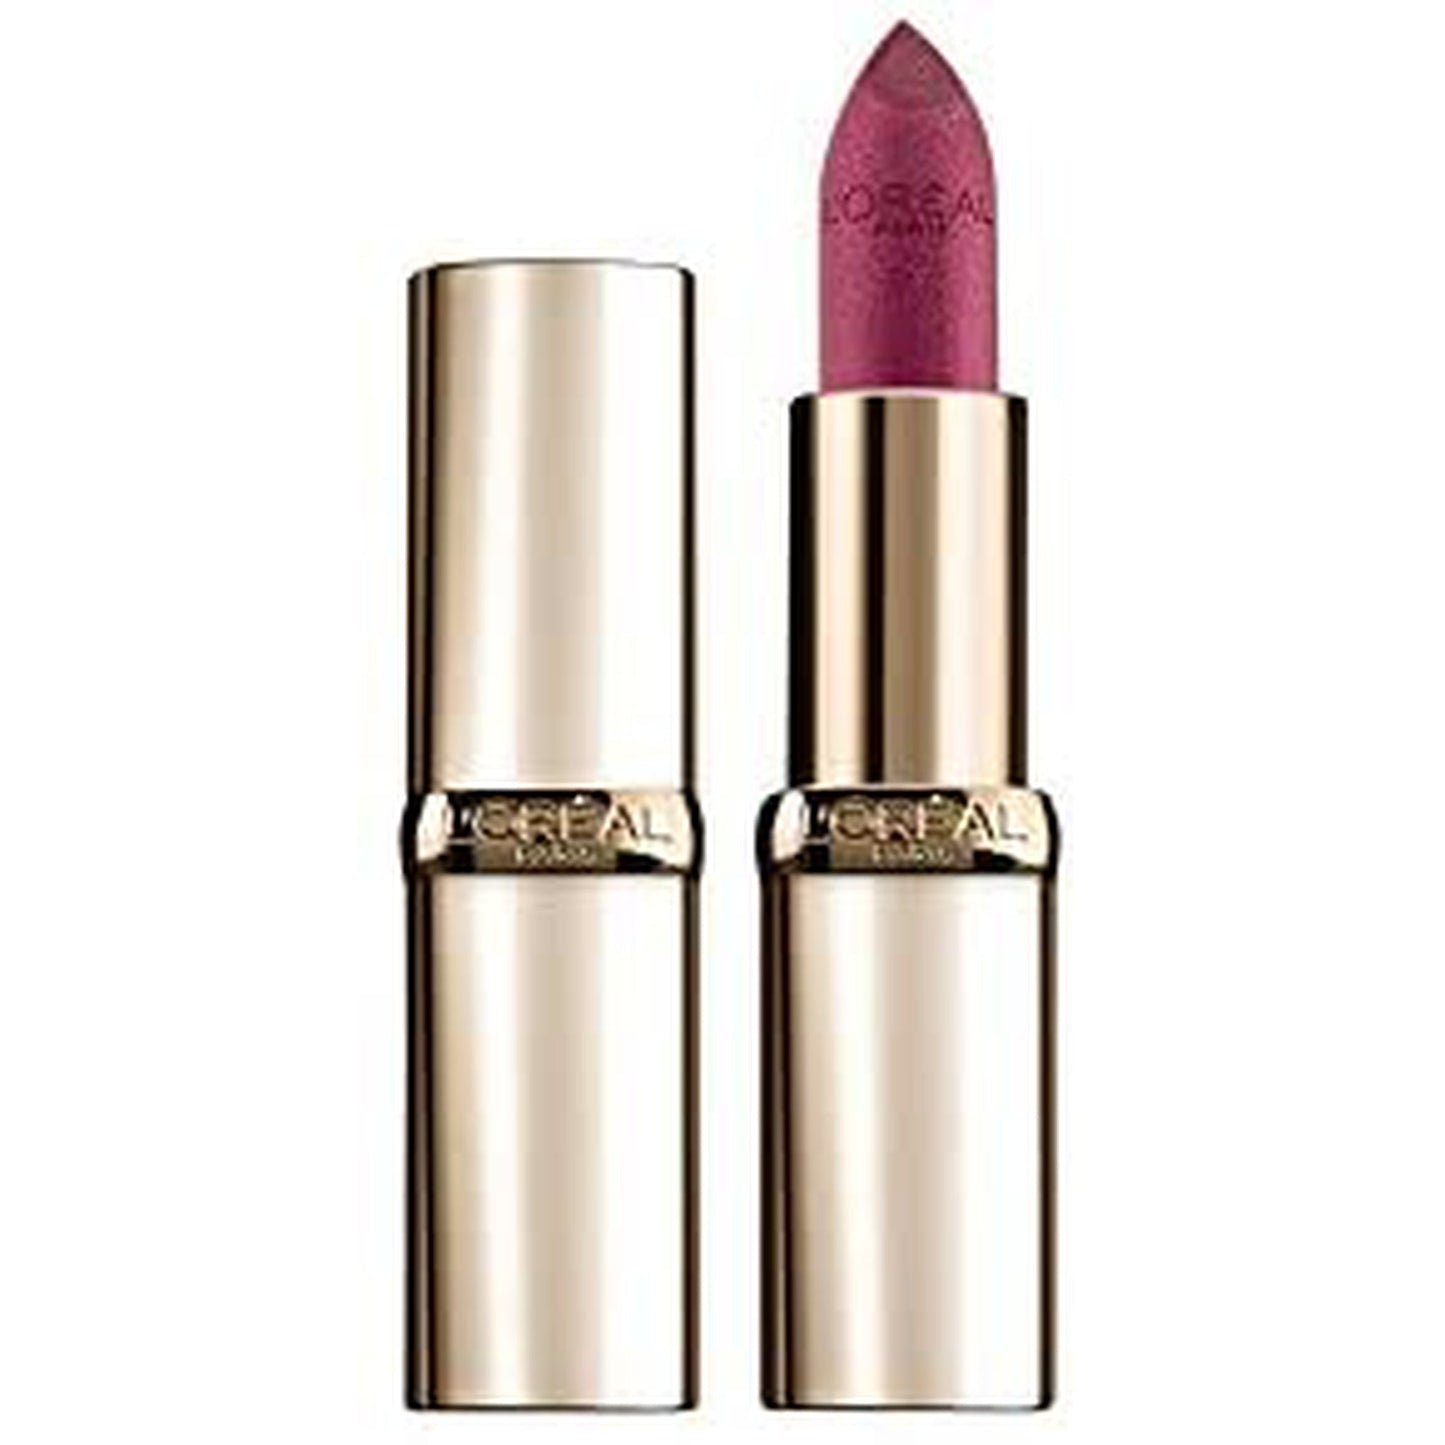 L'Oreal Paris color riche lipstick - 287 Sparkling Amethist-L'Oreal-BeautyNmakeup.co.uk